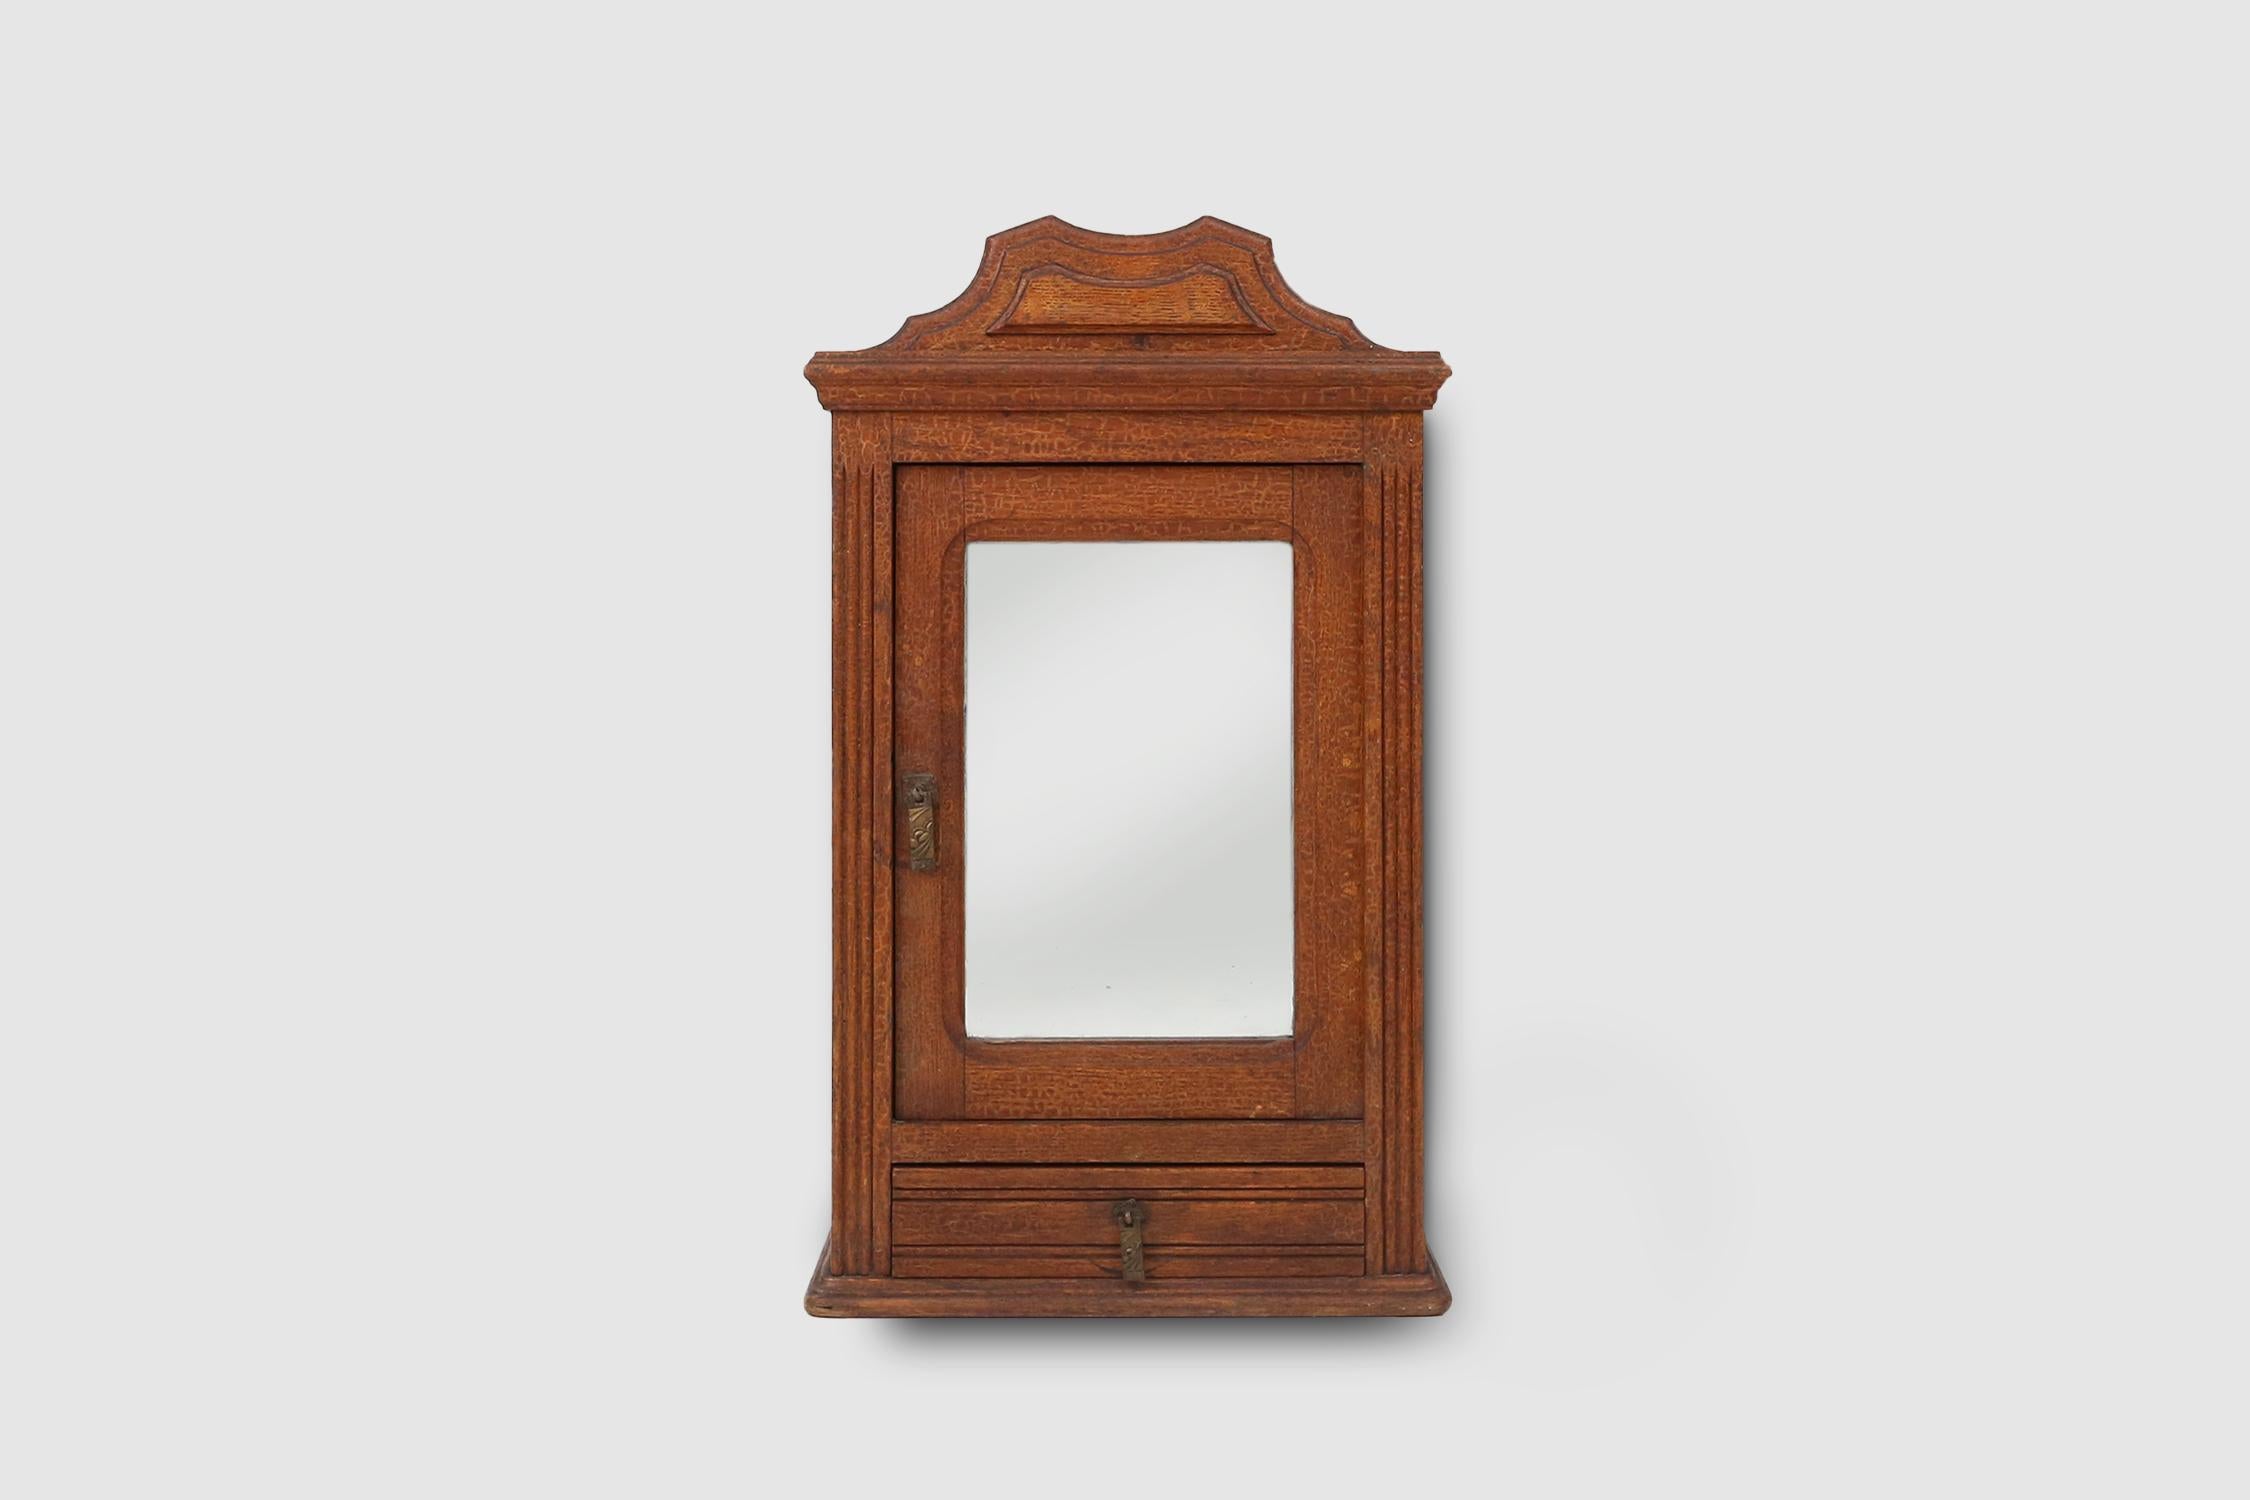 Francia / 1900 / botiquín o afeitado / madera y espejo / rústico / mediados de siglo

Elegante botiquín o gabinete de afeitado fabricado en Francia, hacia 1900. El armario pequeño tiene una puerta de espejo y un pequeño cajón debajo. Ambas con